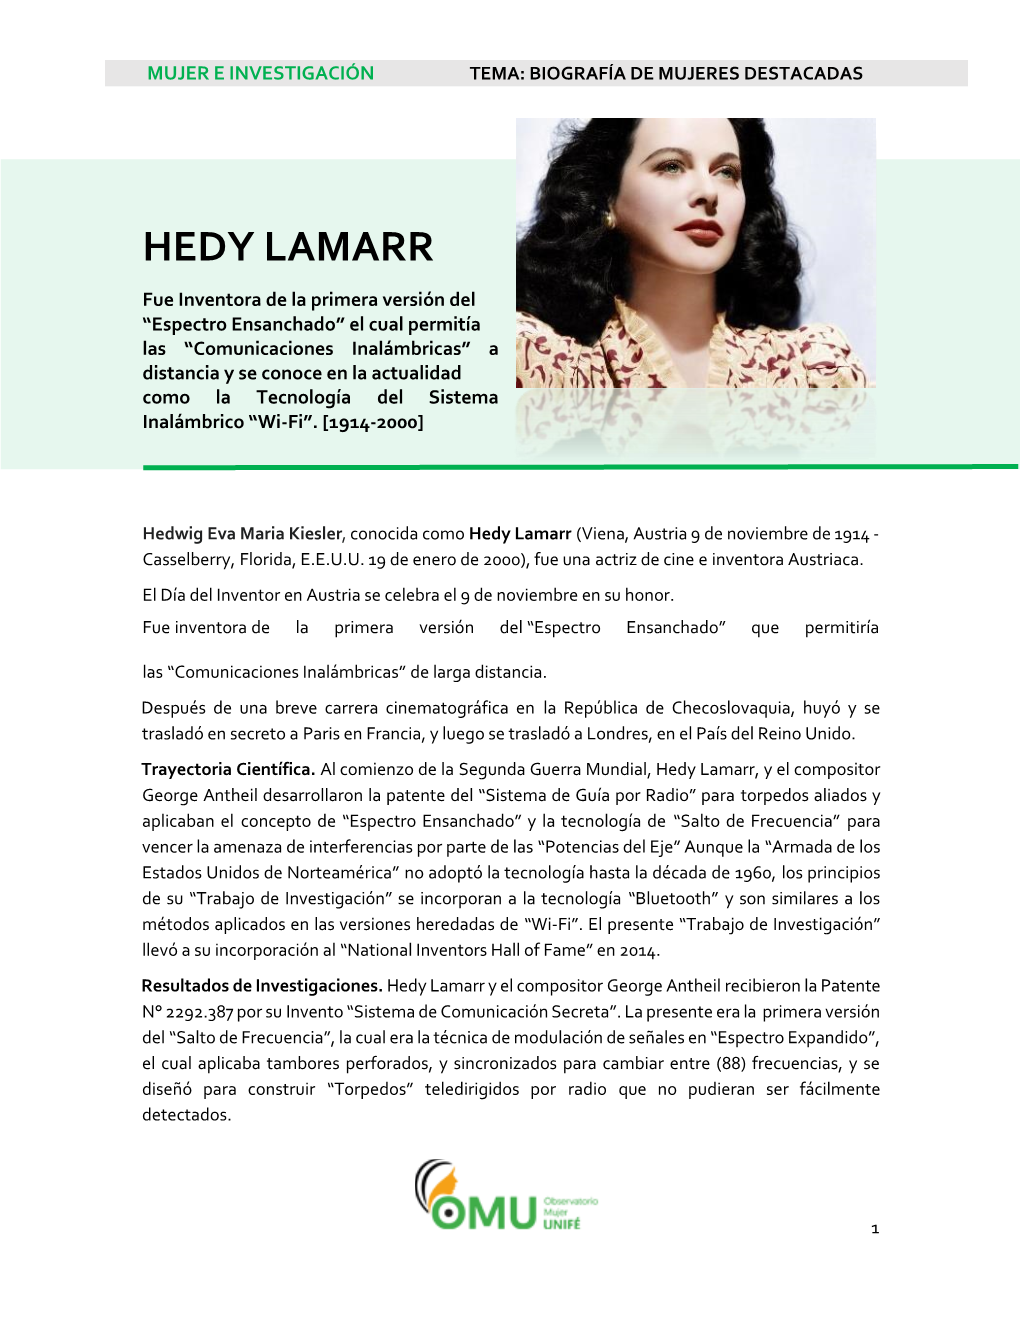 Hedy Lamarr ( Viena, Austria 9 De Noviembre De 1914 - Casselberry , Florida , E.E.U.U